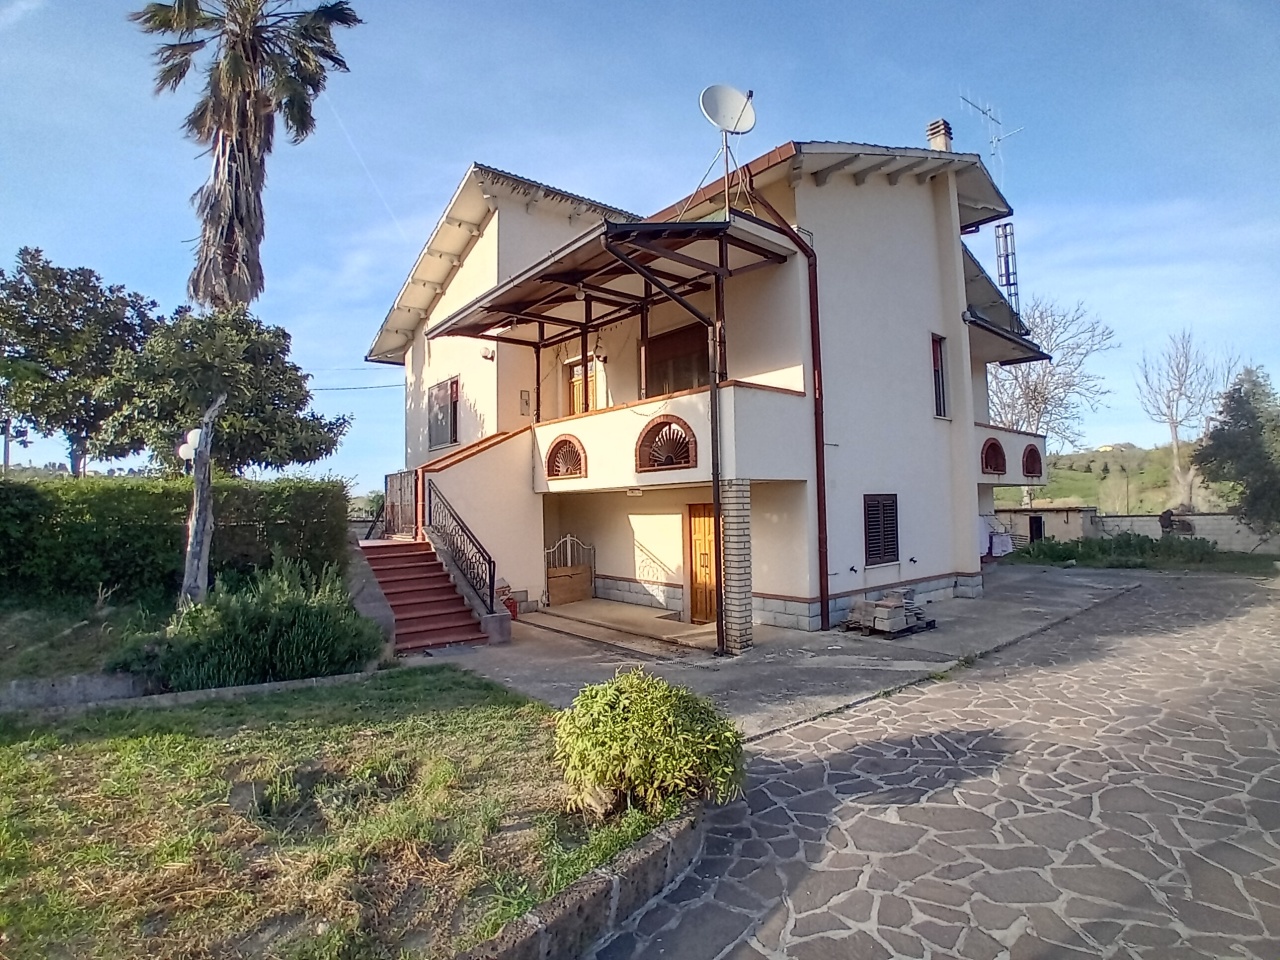 Villa in vendita a Manoppello, 8 locali, prezzo € 220.000 | PortaleAgenzieImmobiliari.it